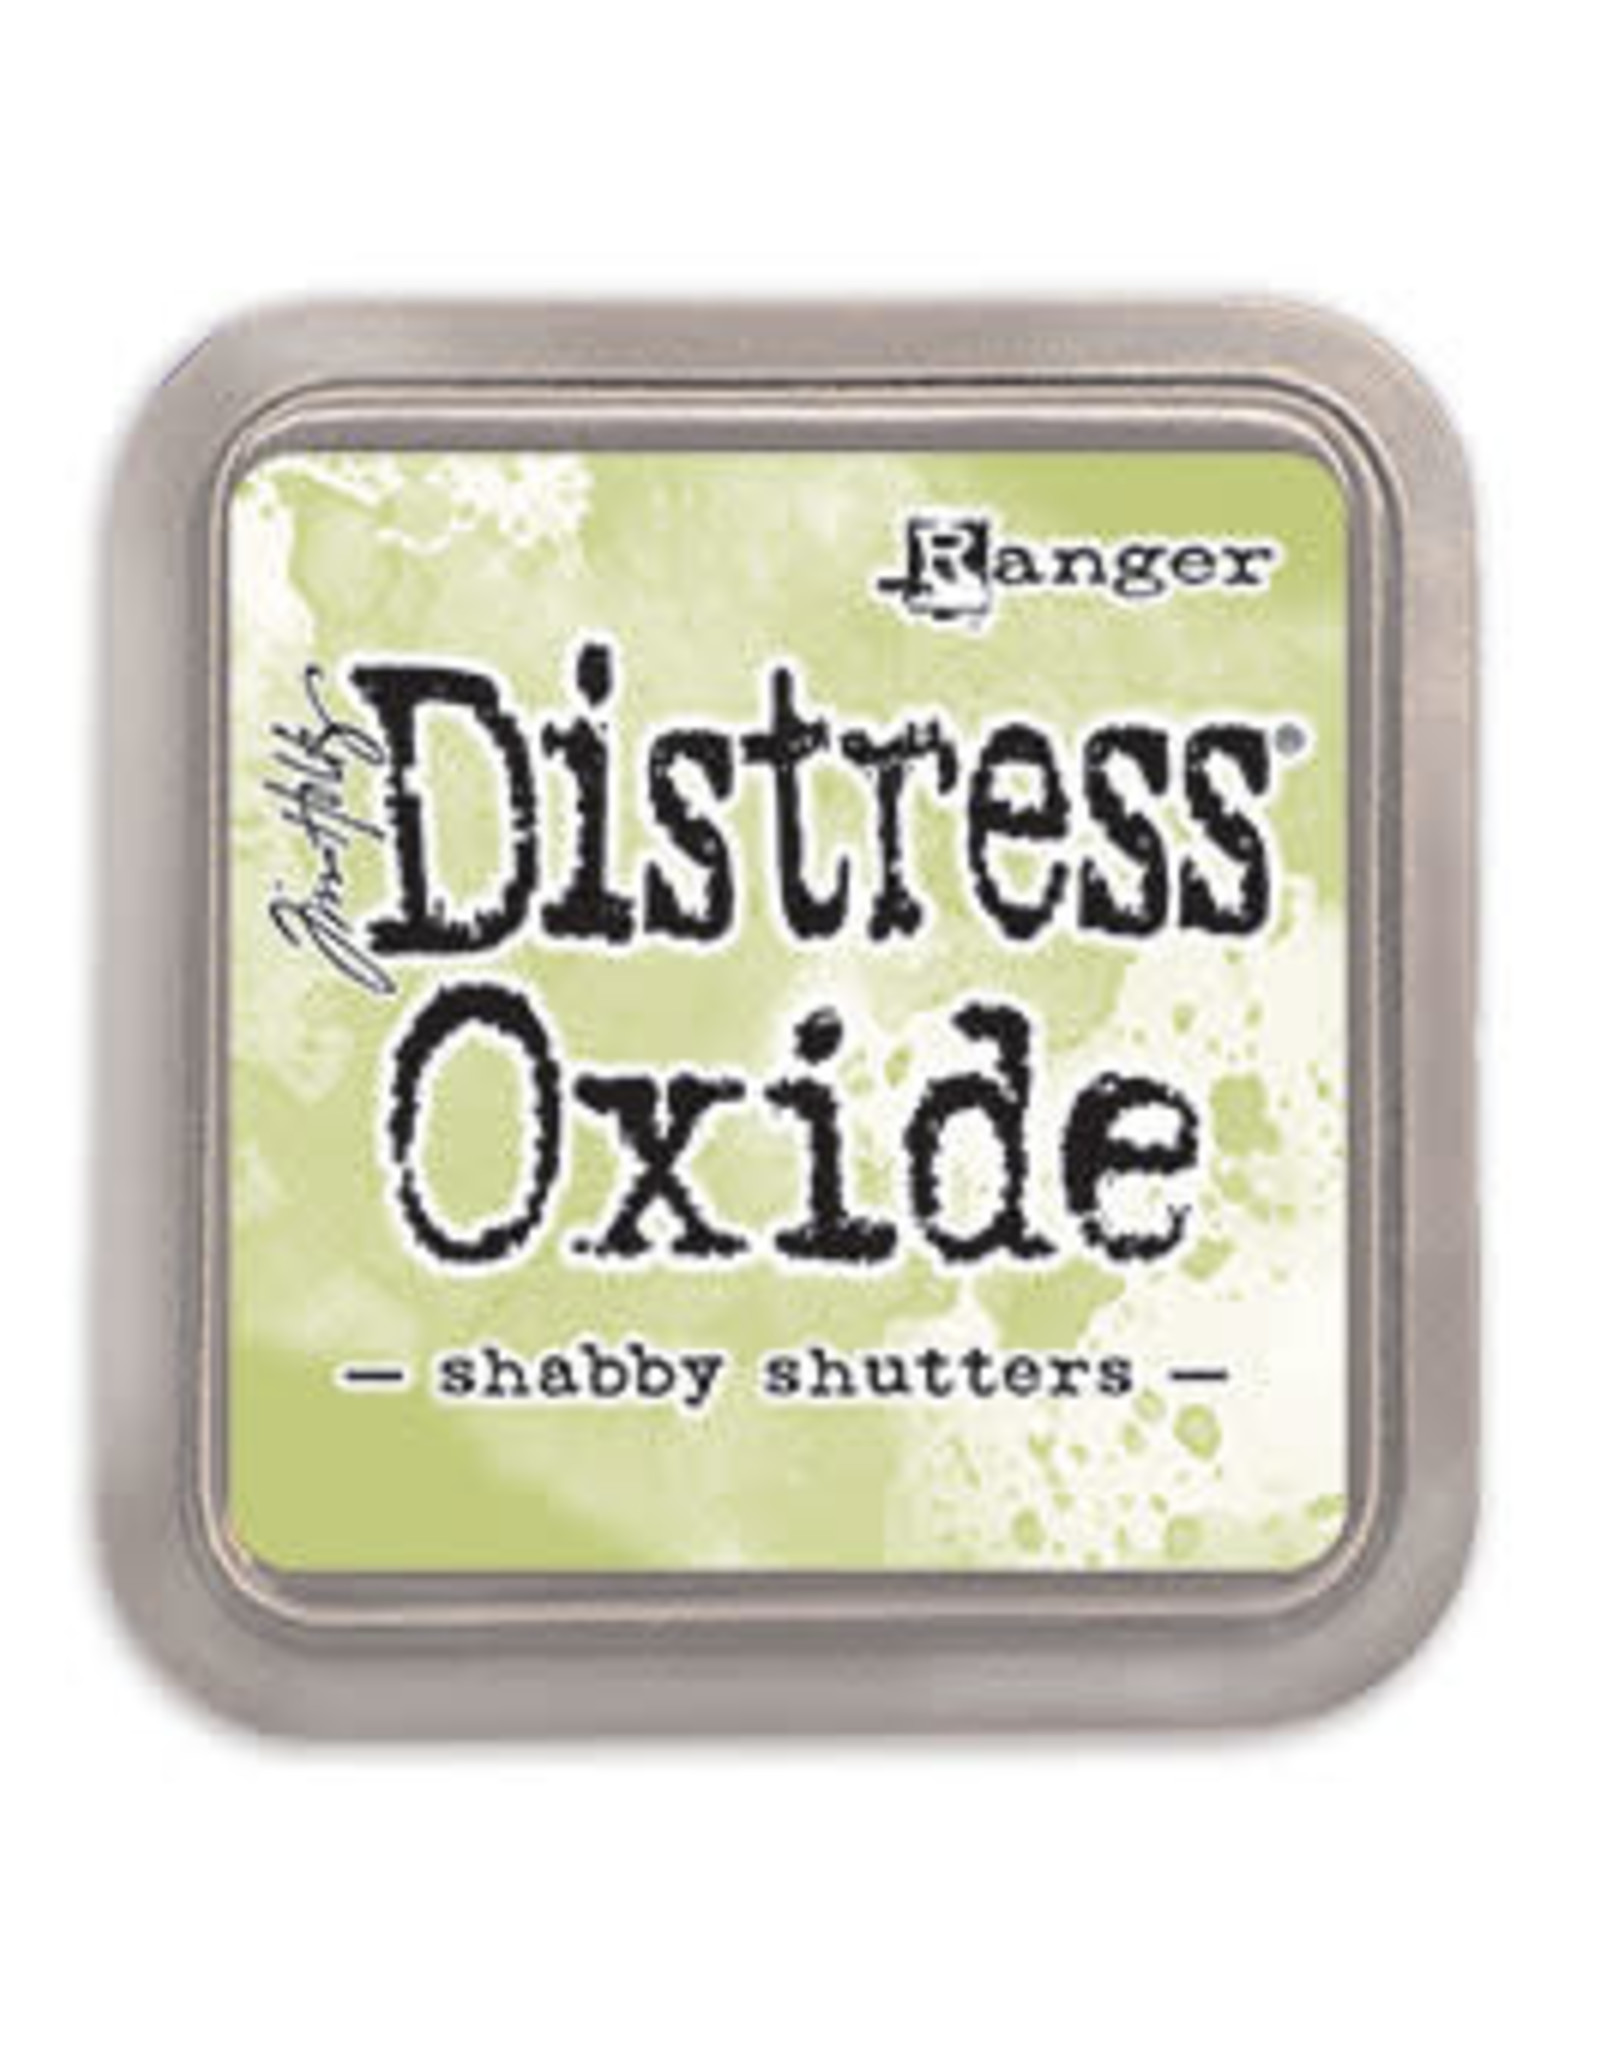 Tim Holtz - Ranger Distress Oxide Shabby Shutters